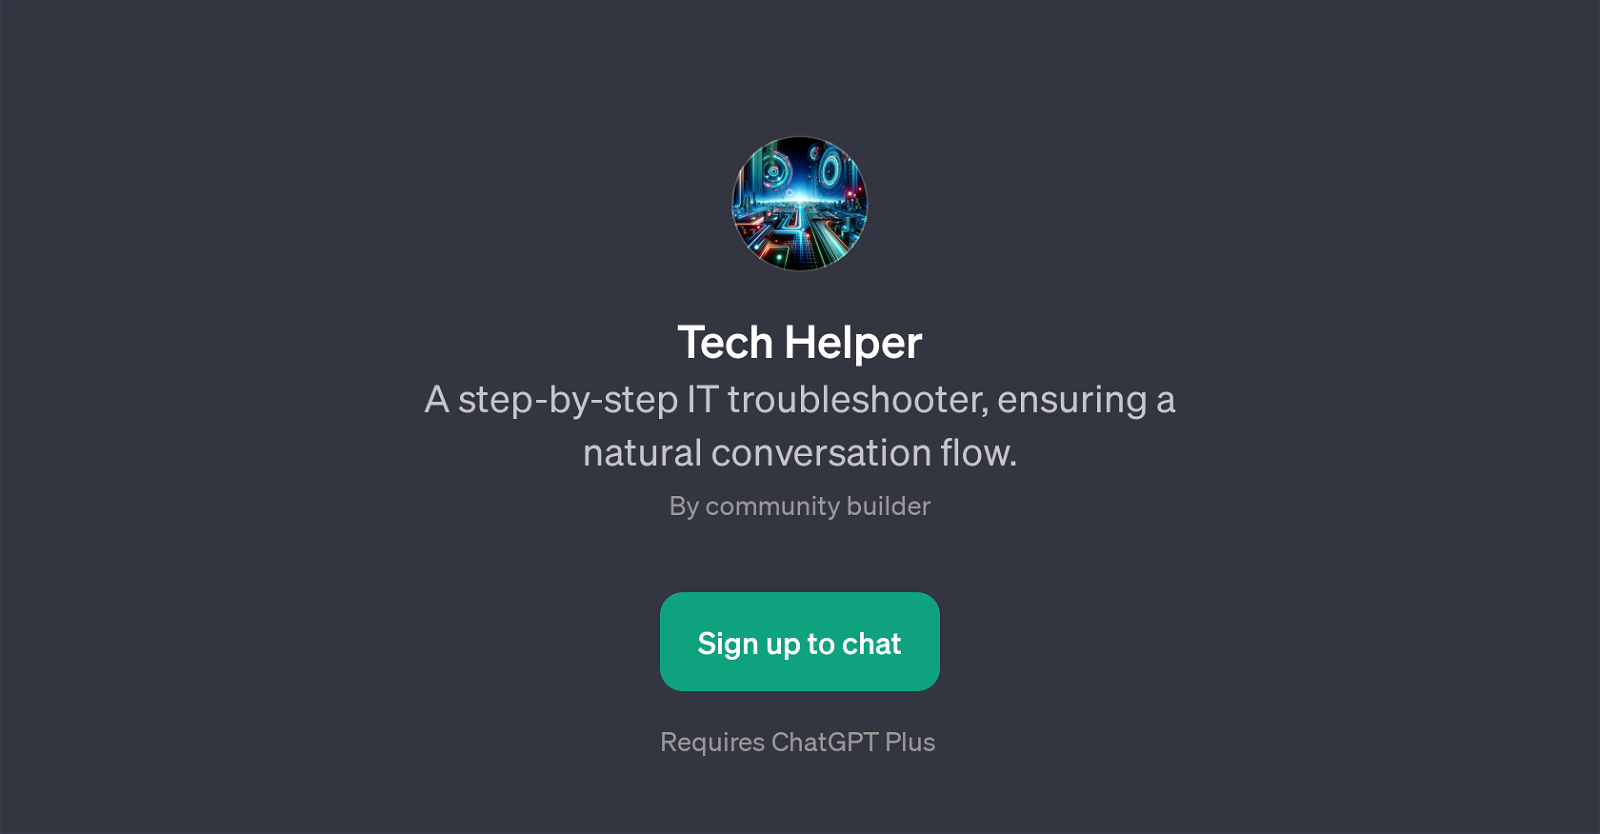 Tech Helper website